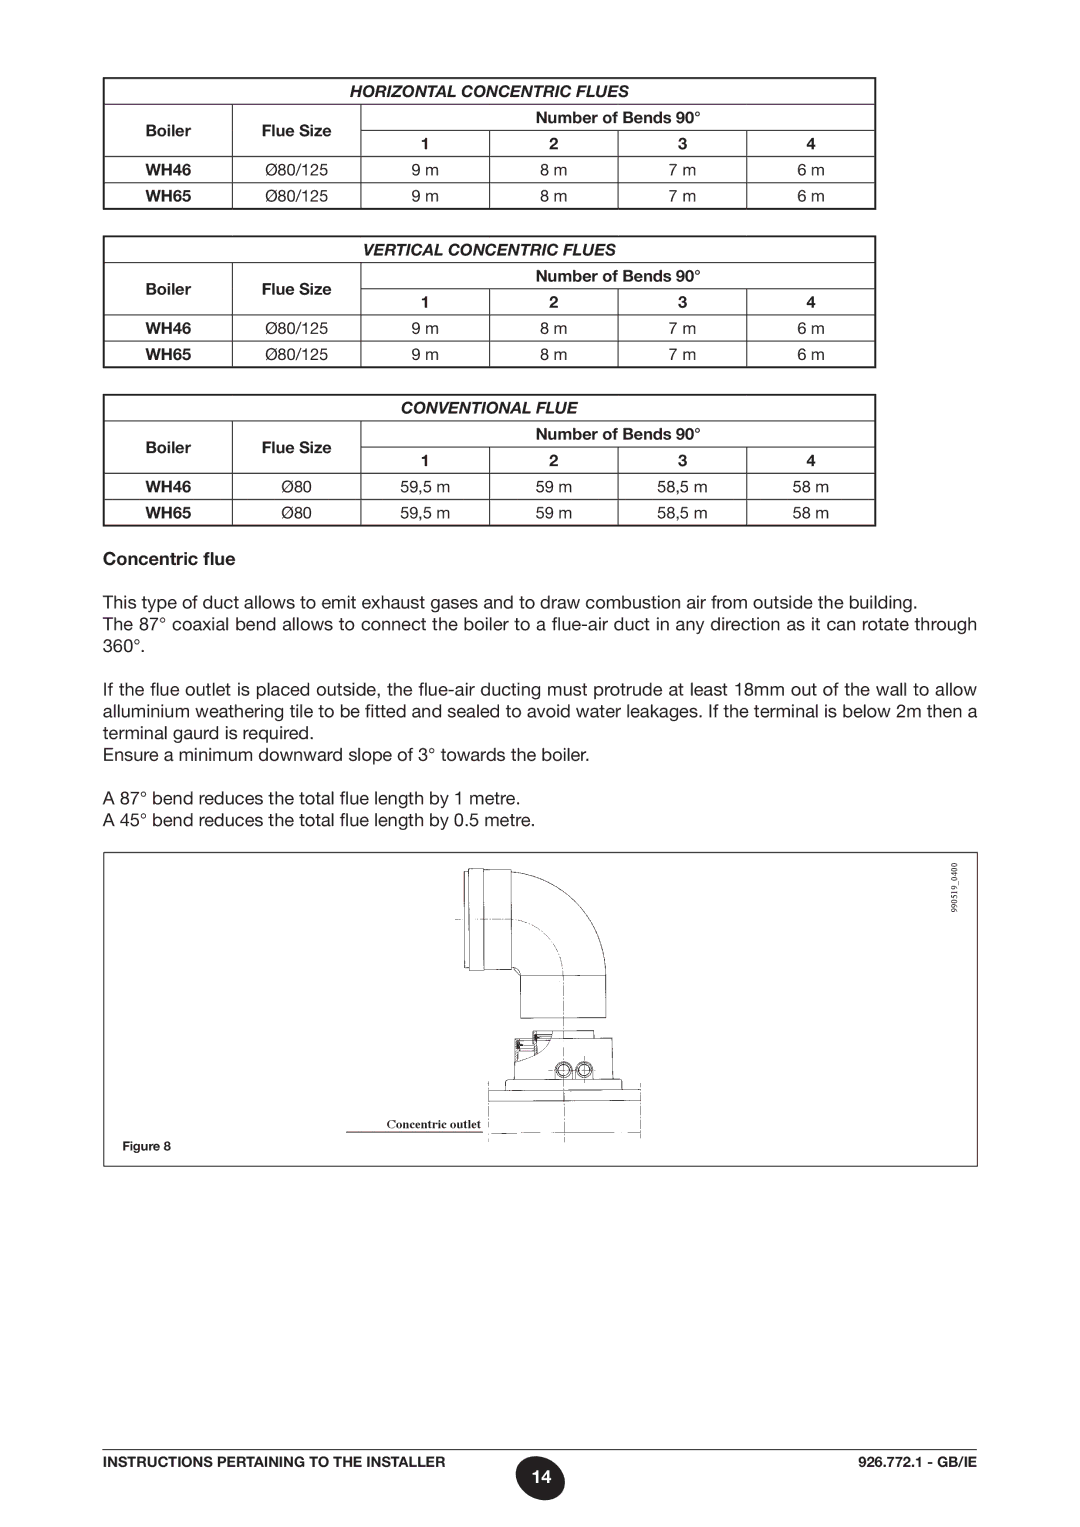 Baxi Potterton WH65, WH46 manual Concentric flue, Horizontal Concentric Flues 